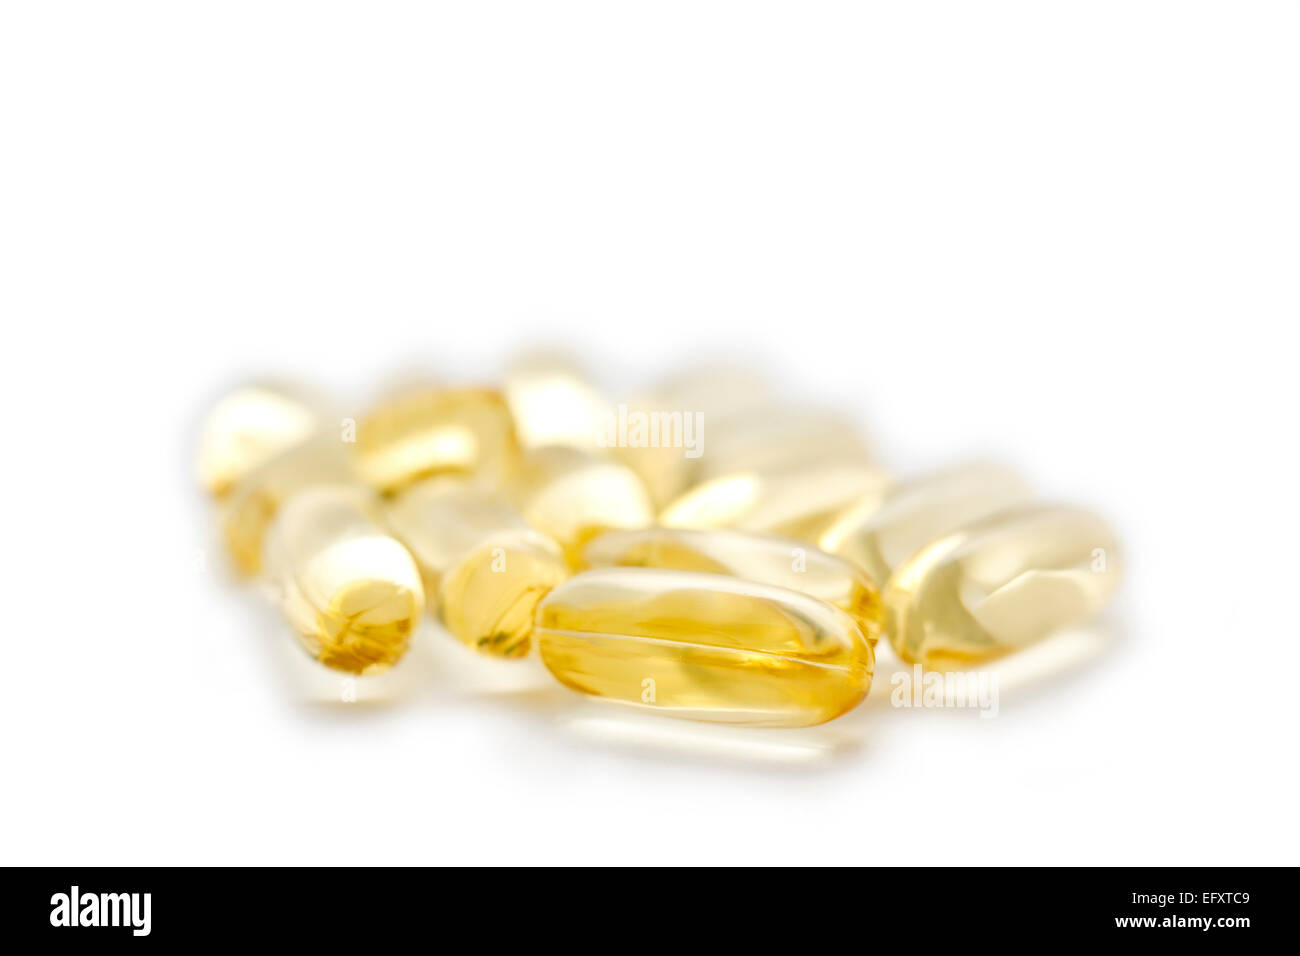 Omega 3 - 6 - 9 píldoras de suplementos sobre fondo blanco. Los ácidos grasos saludables del pescado. Foto de stock